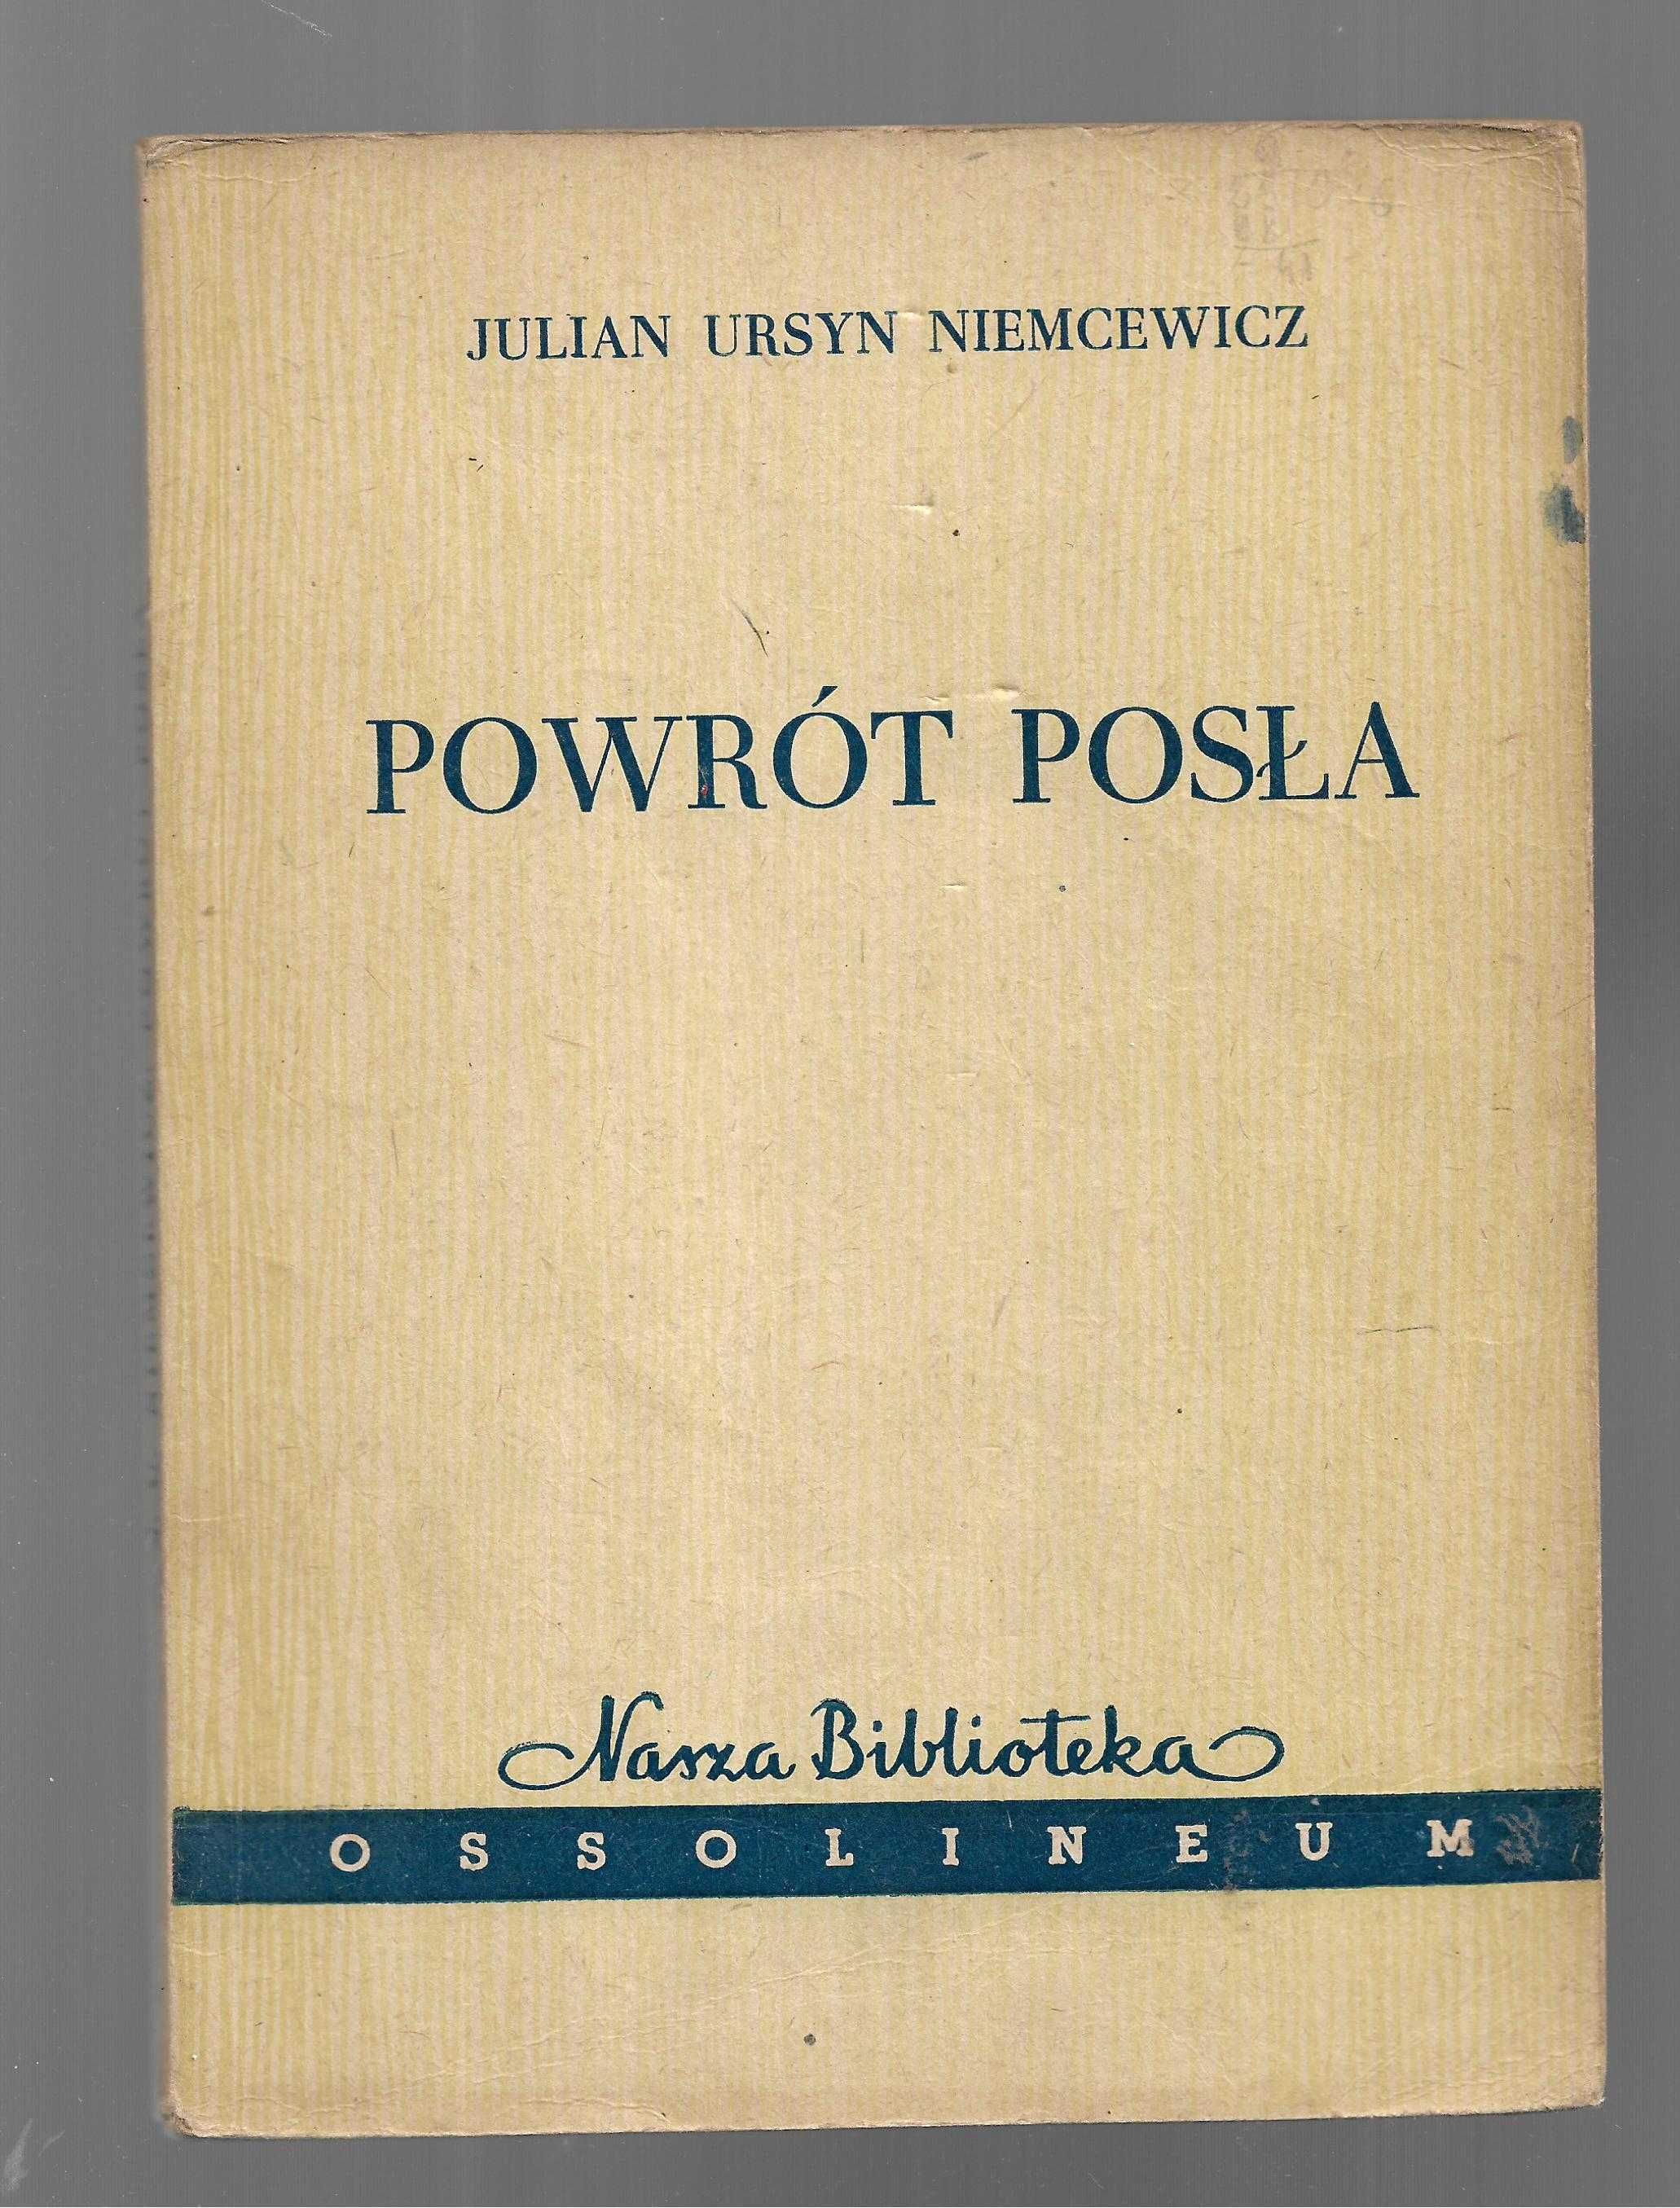 Powrót posła Julian Ursyn Niemcewicz 1958